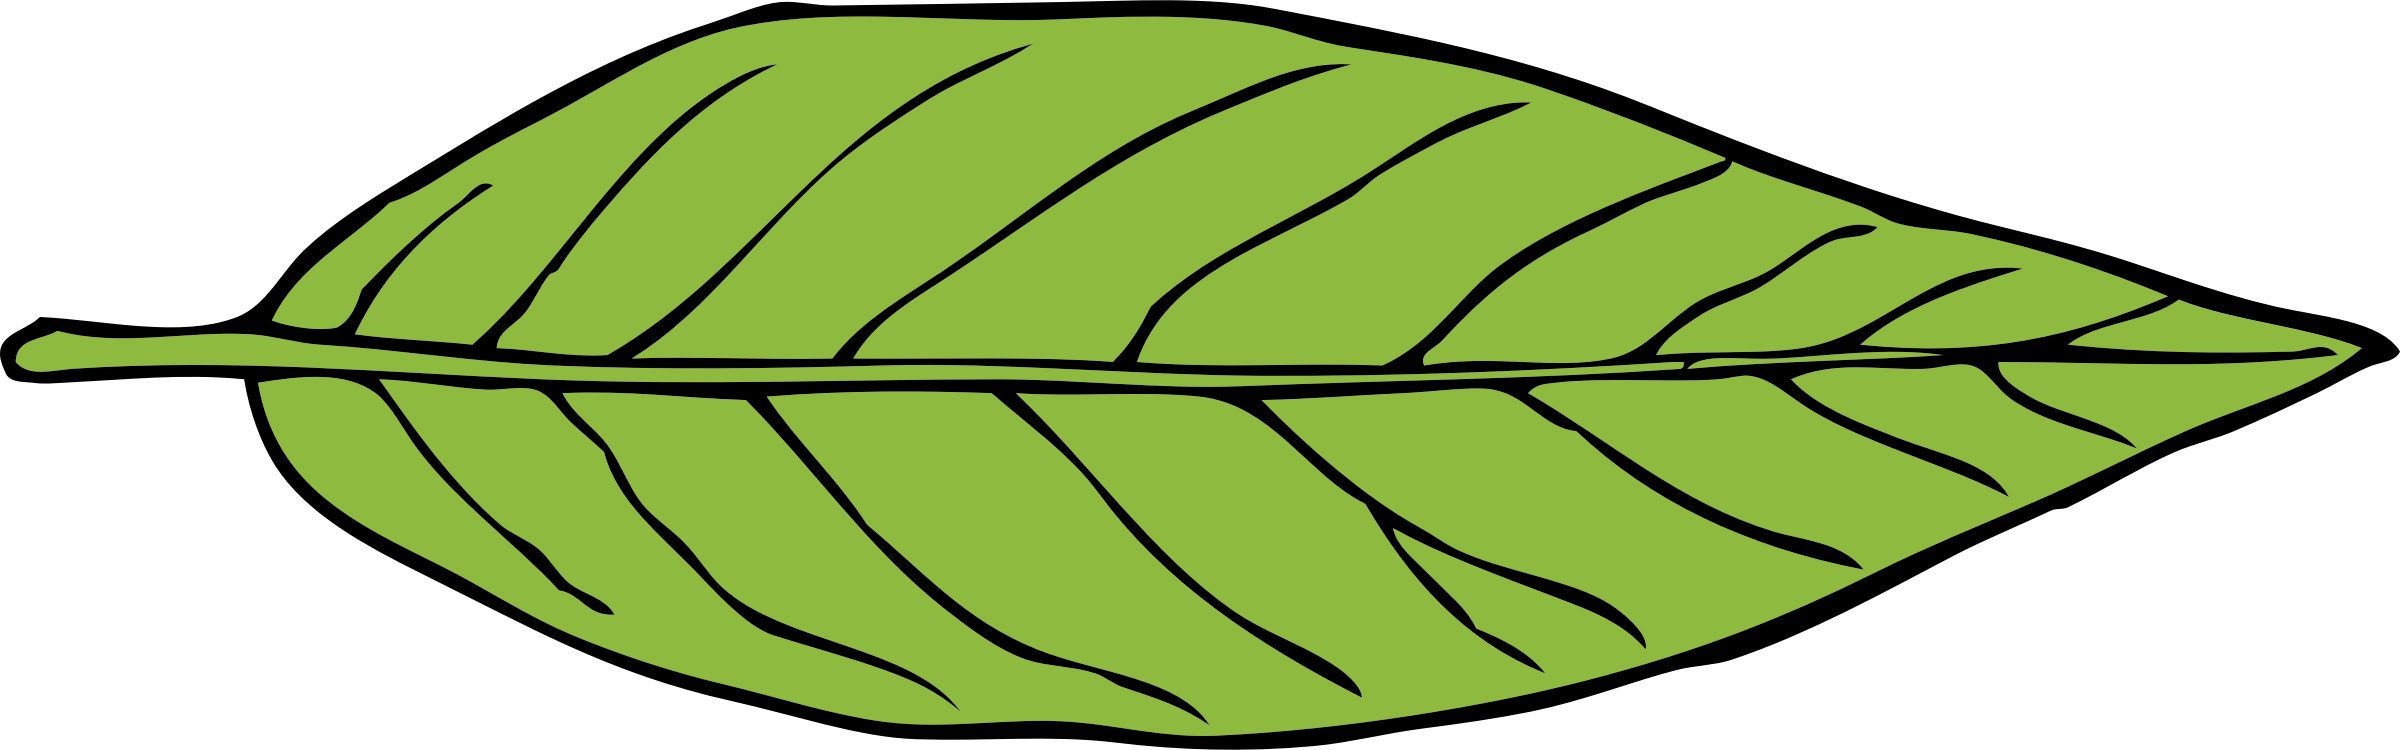 Plant,Leaf,Food